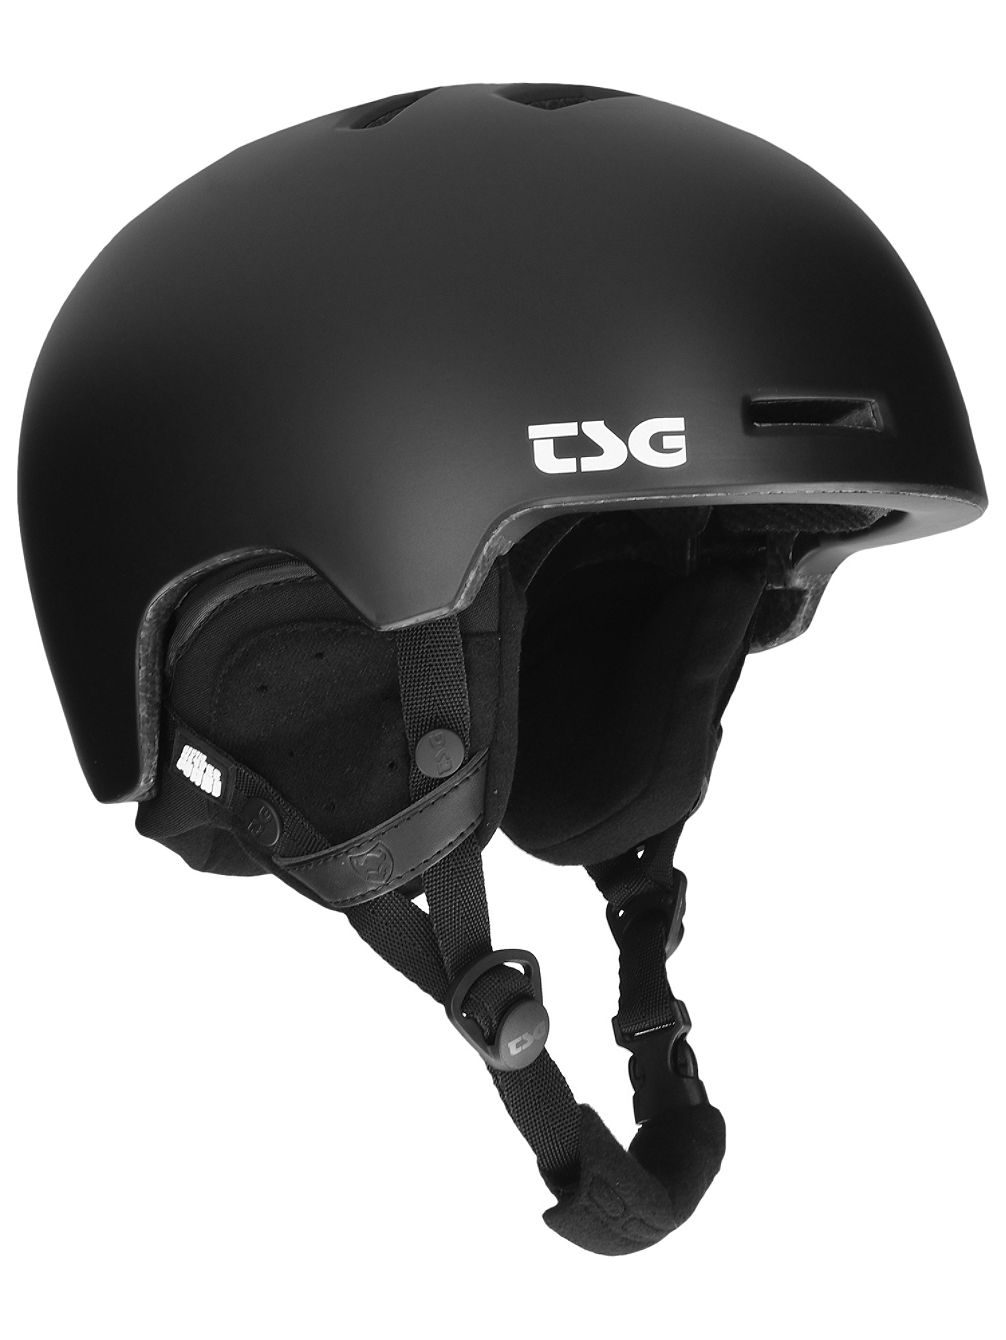 Arctic Nipper Maxi Snowboard Helmet